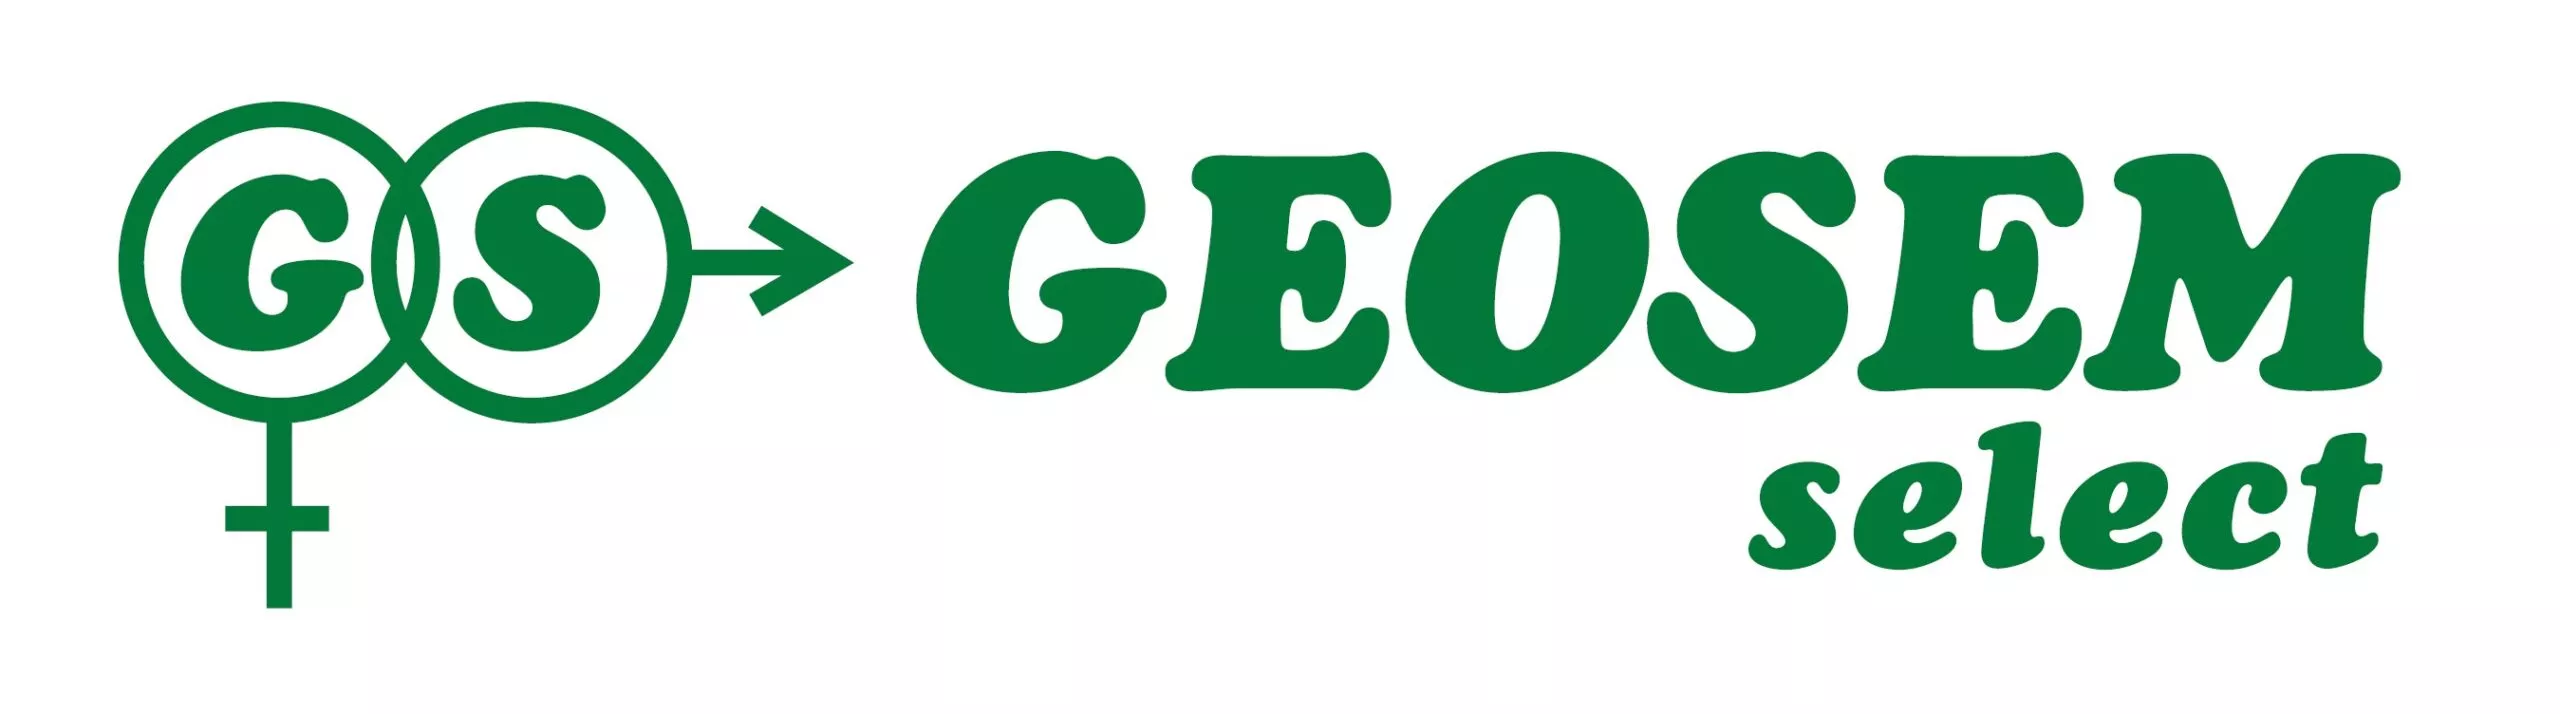 logo-seeder